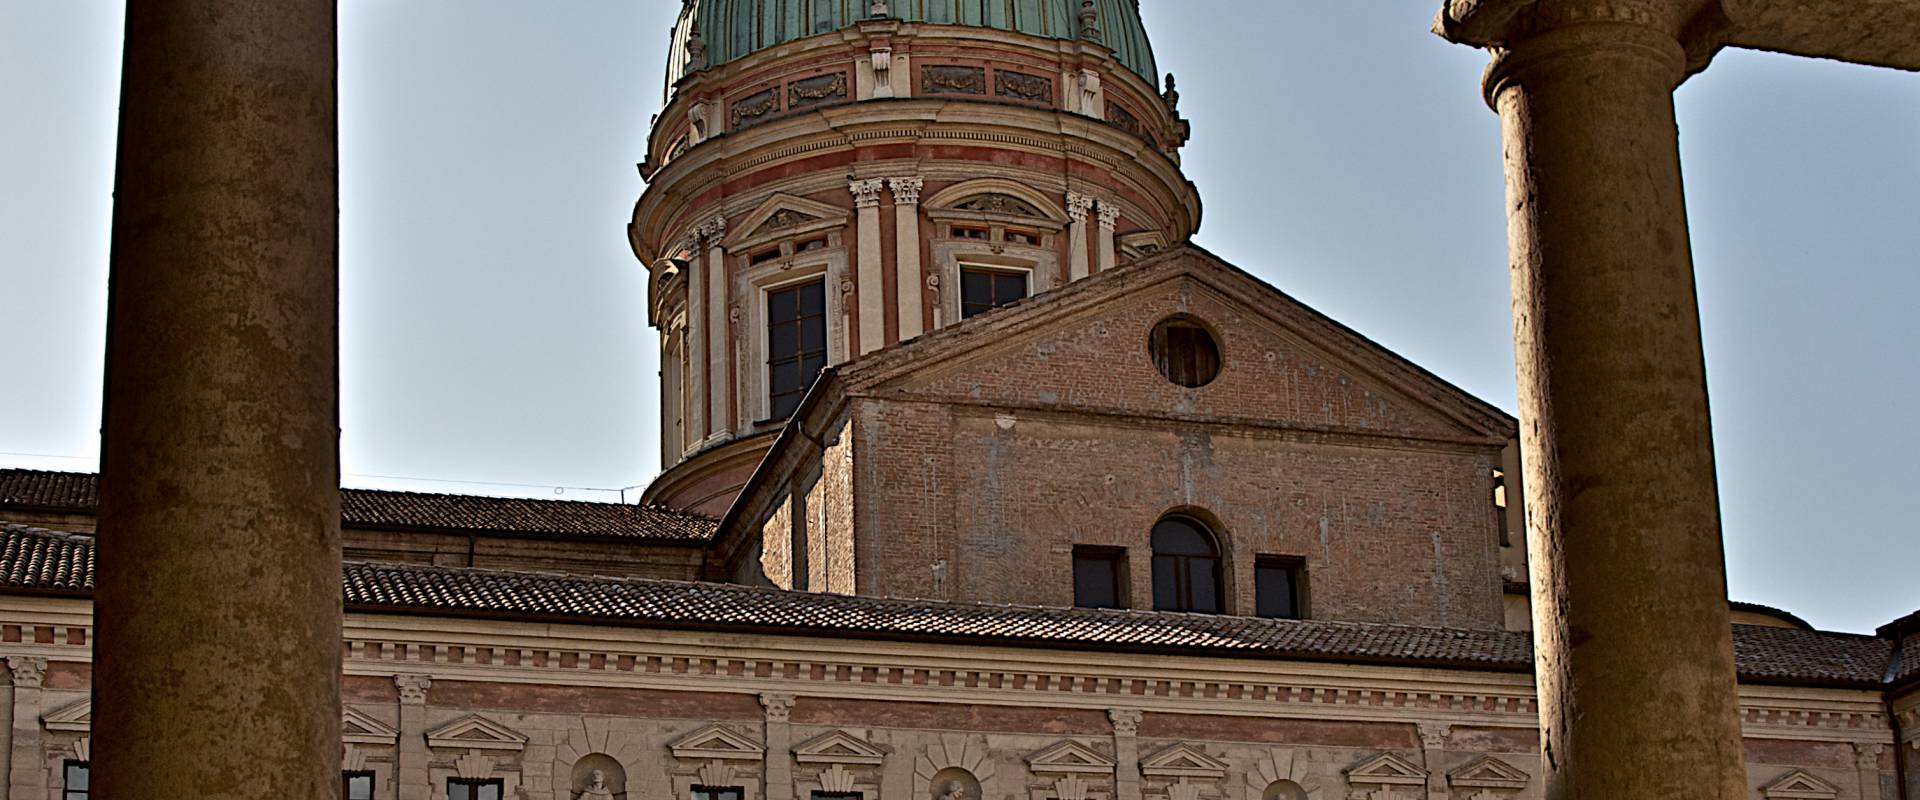 La chiesa vista dai chiostri foto di Caba2011